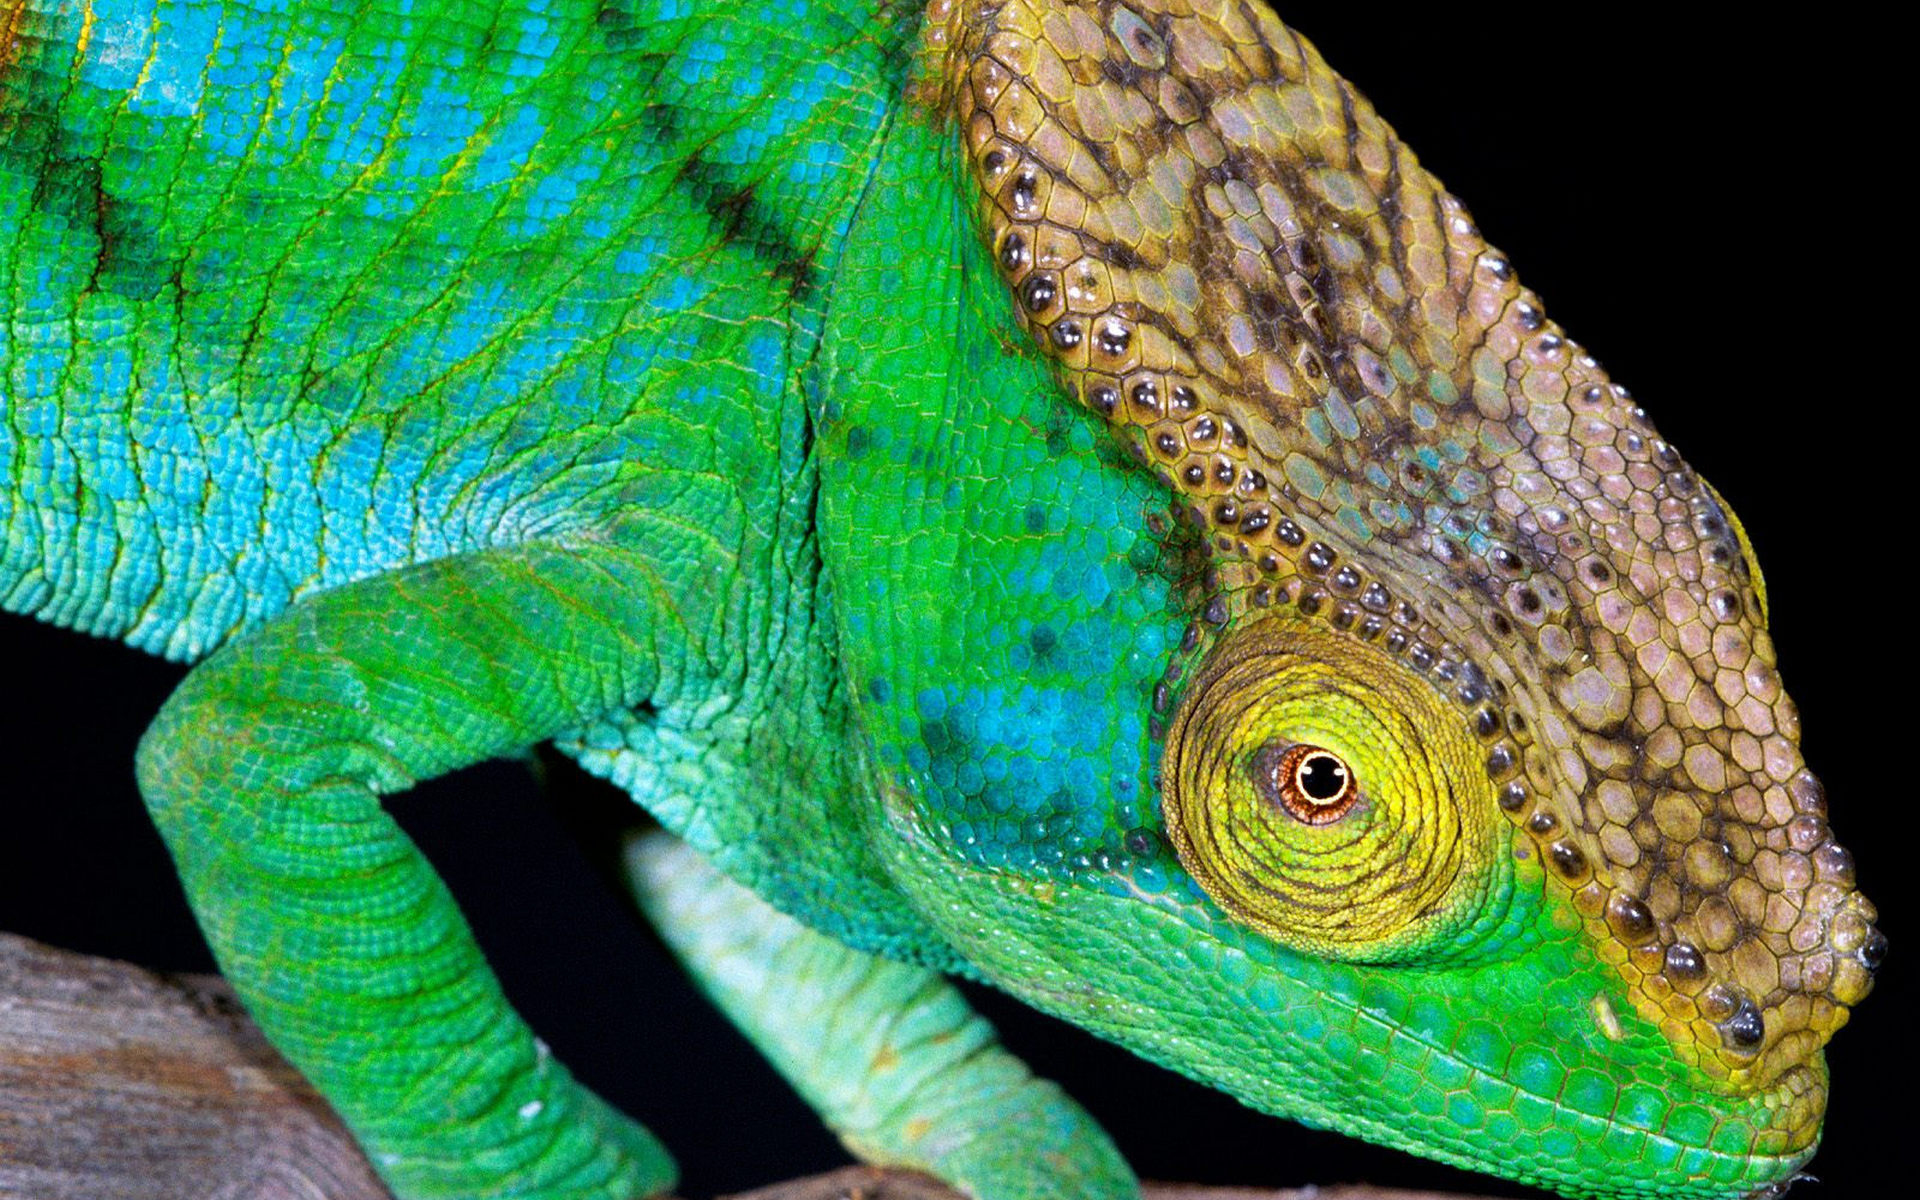 Descarga gratuita de fondo de pantalla para móvil de Camaleón, Reptiles, Animales.